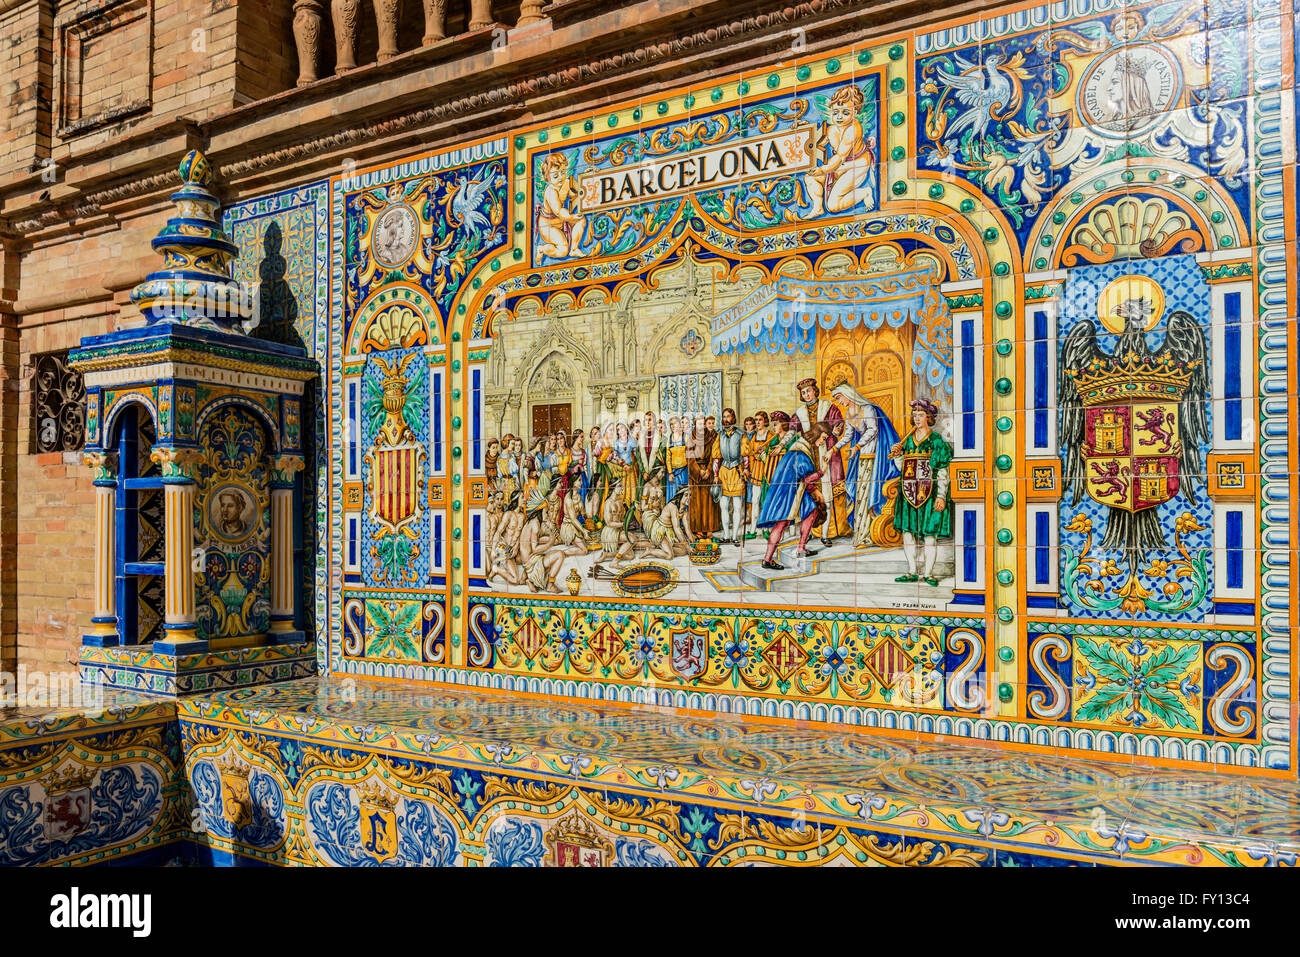 Antique de cerámica, azulejos de la pared representando a las provincias y ciudades de España , Barcelona , la Plaza de España, la plaza de España, Sevilla, una Foto de stock